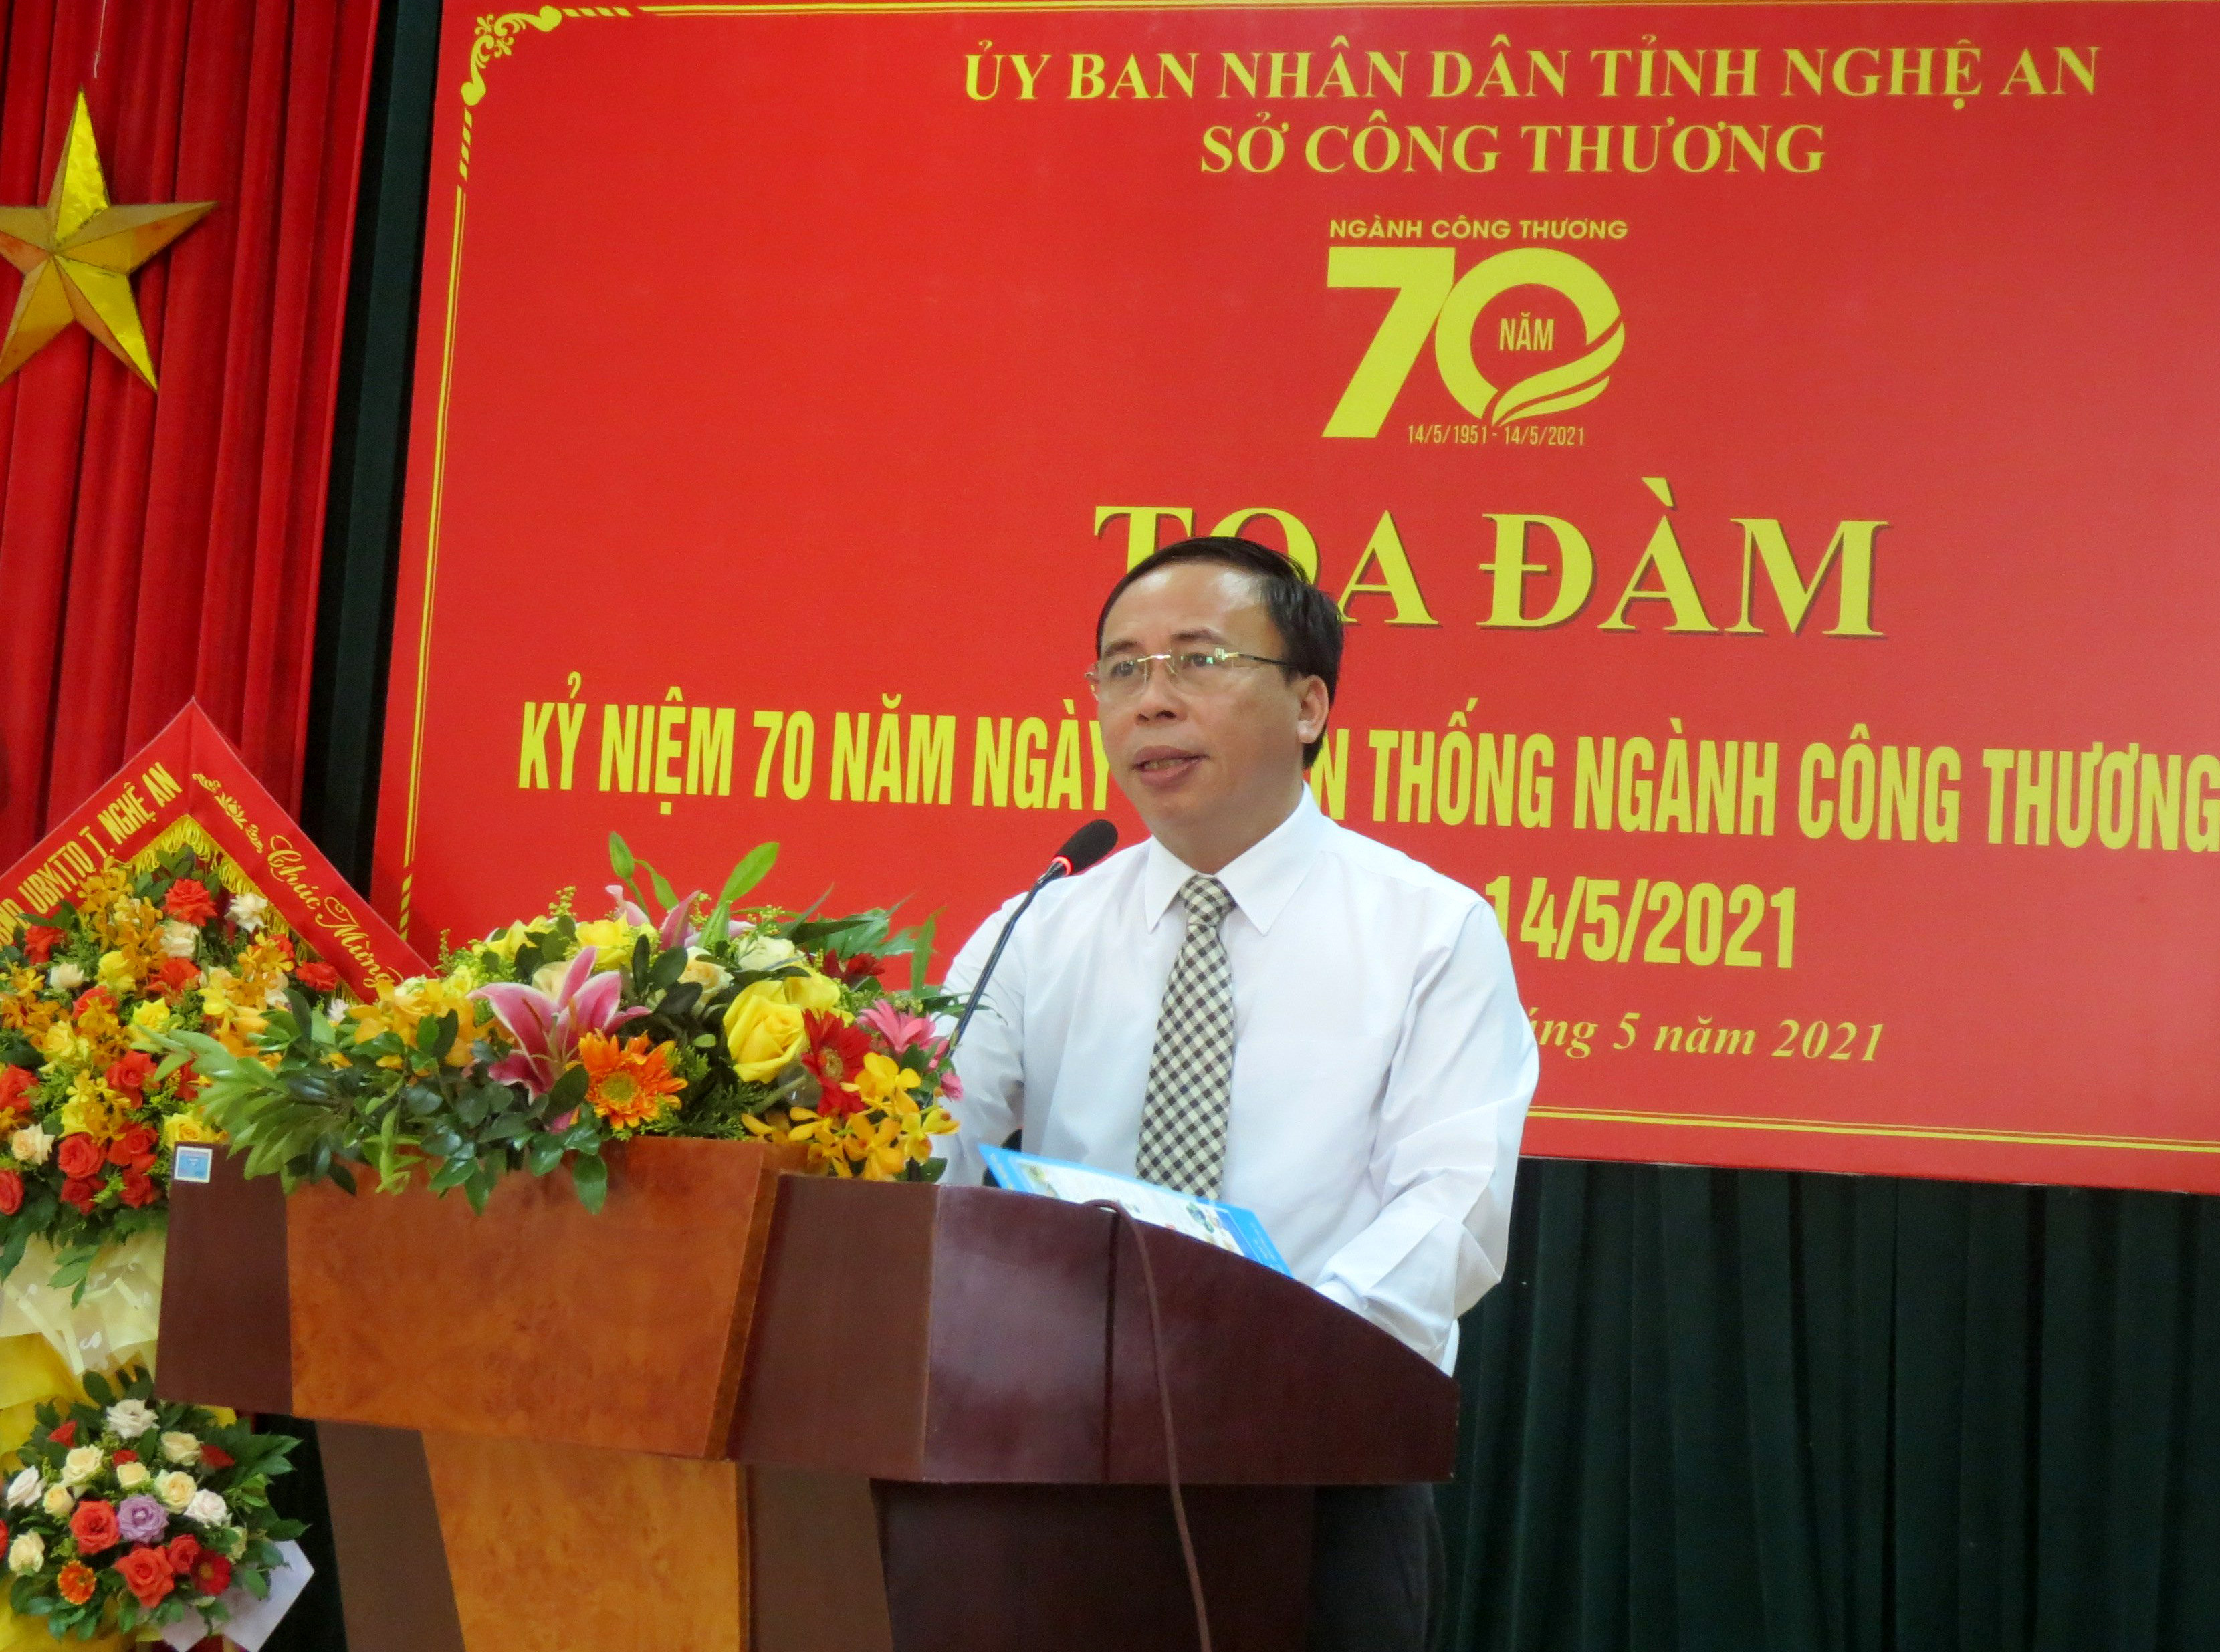 Giám đốc Sở Công Thương Phạm Văn Hóa phát biểu tại lễ kỷ niệm. Ảnh Thu Huyền